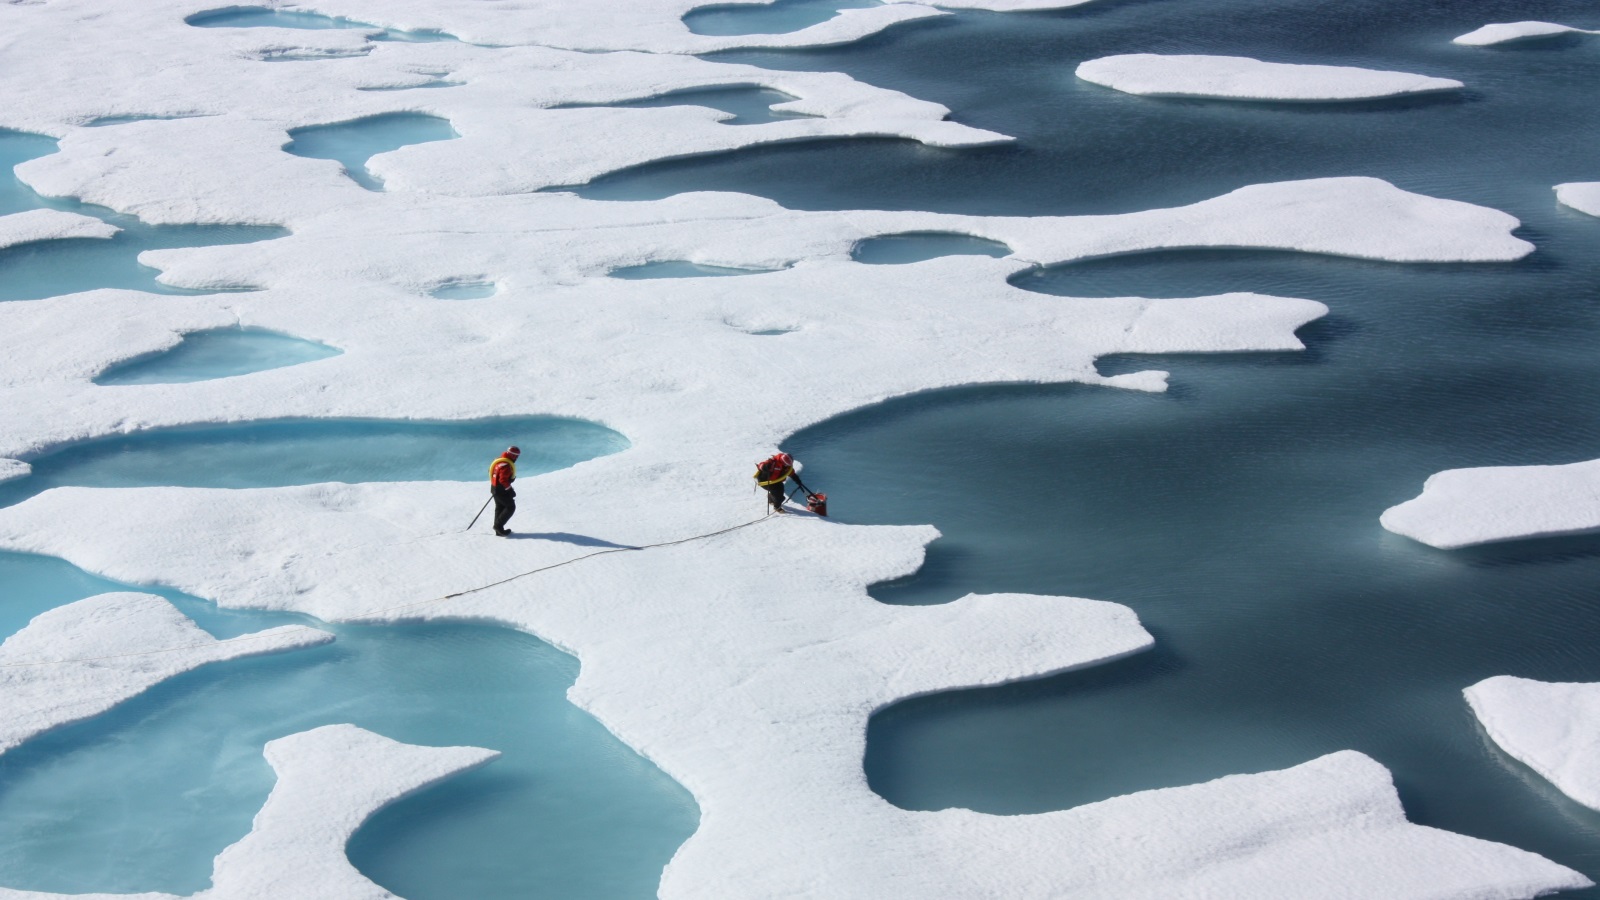 ‪ذوبان الجليد نتيجة تغير المناخ يتسبب في ارتفاع مستوى سطح البحر (ويكيبيديا)‬ ذوبان الجليد نتيجة تغير المناخ يتسبب في ارتفاع مستوى سطح البحر (ويكيبيديا) 